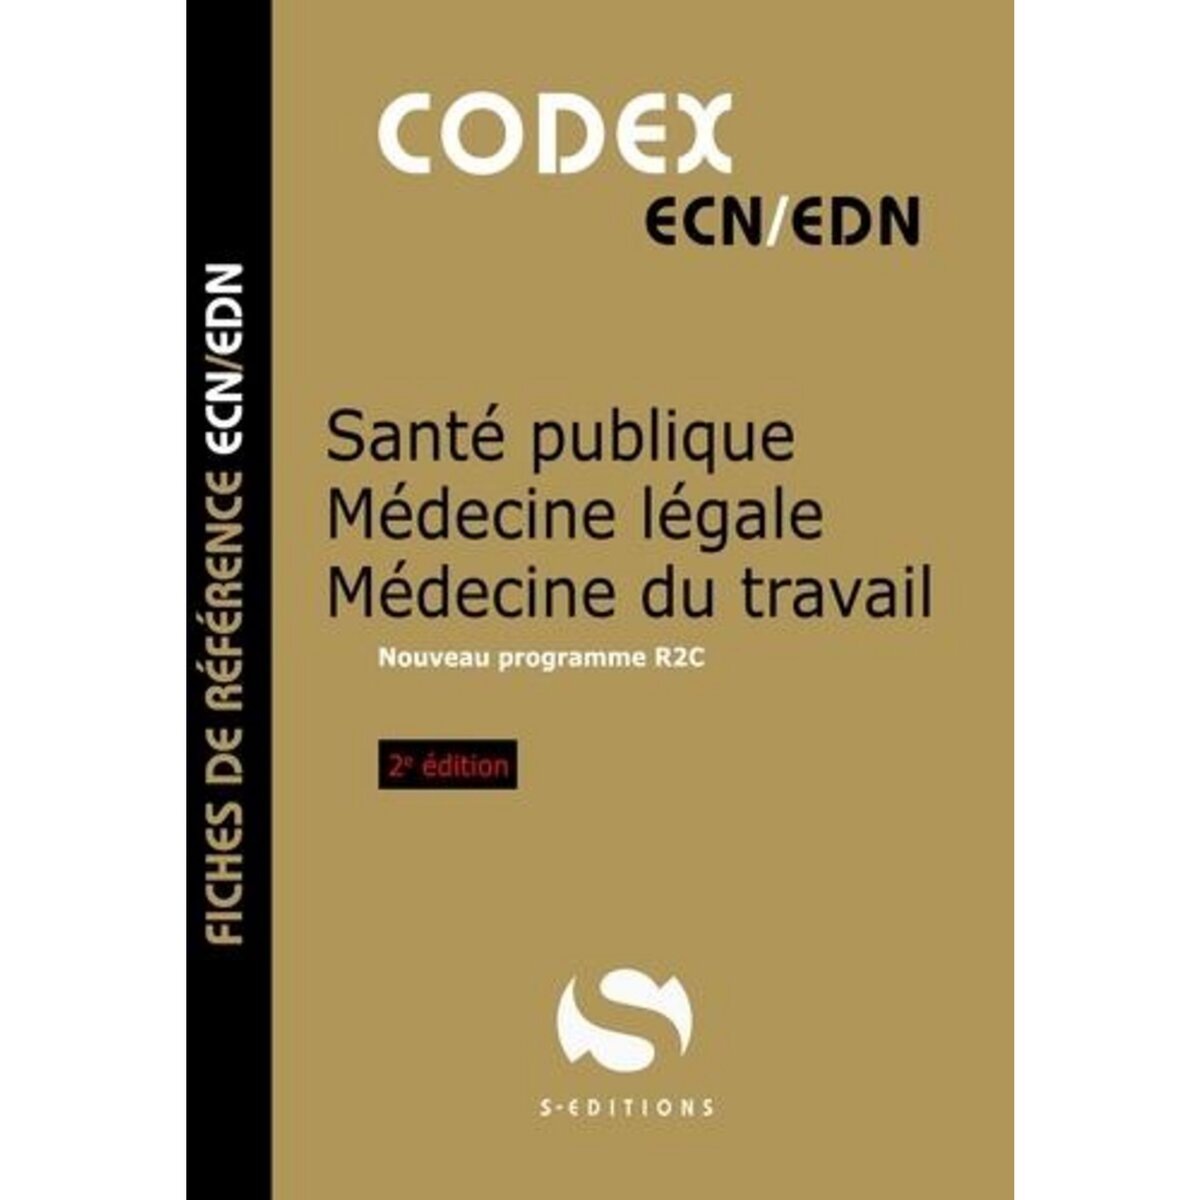  SANTE PUBLIQUE - MEDECINE LEGALE - MEDECINE DU TRAVAIL. PROGRAMME R2C, 2E EDITION, Gavoille Antoine